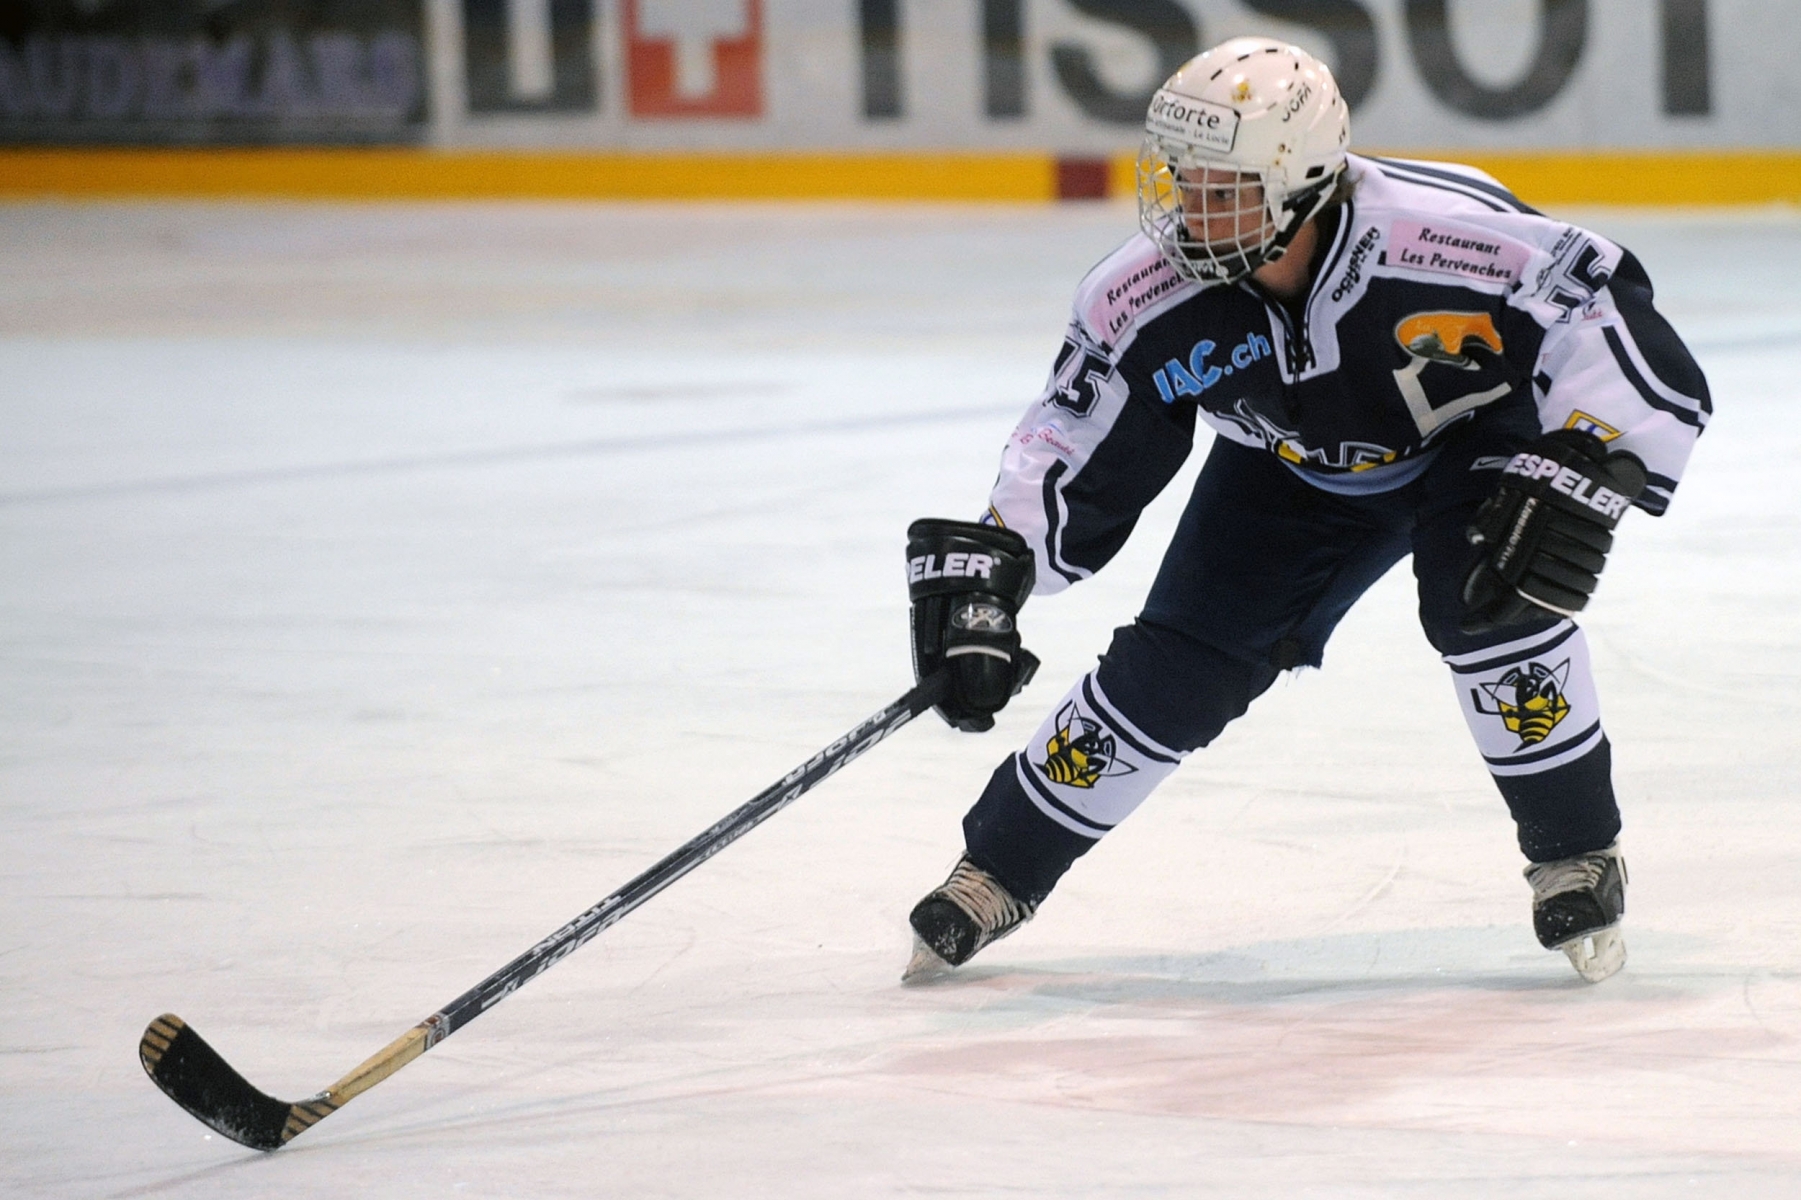 Hockey sur glace feminin.
HCC - Lausanne
Sandrine Chapatte
LA CHAUX-DE-FONDS 31 01 2009
PHOTO: CHRISTIAN GALLEY
